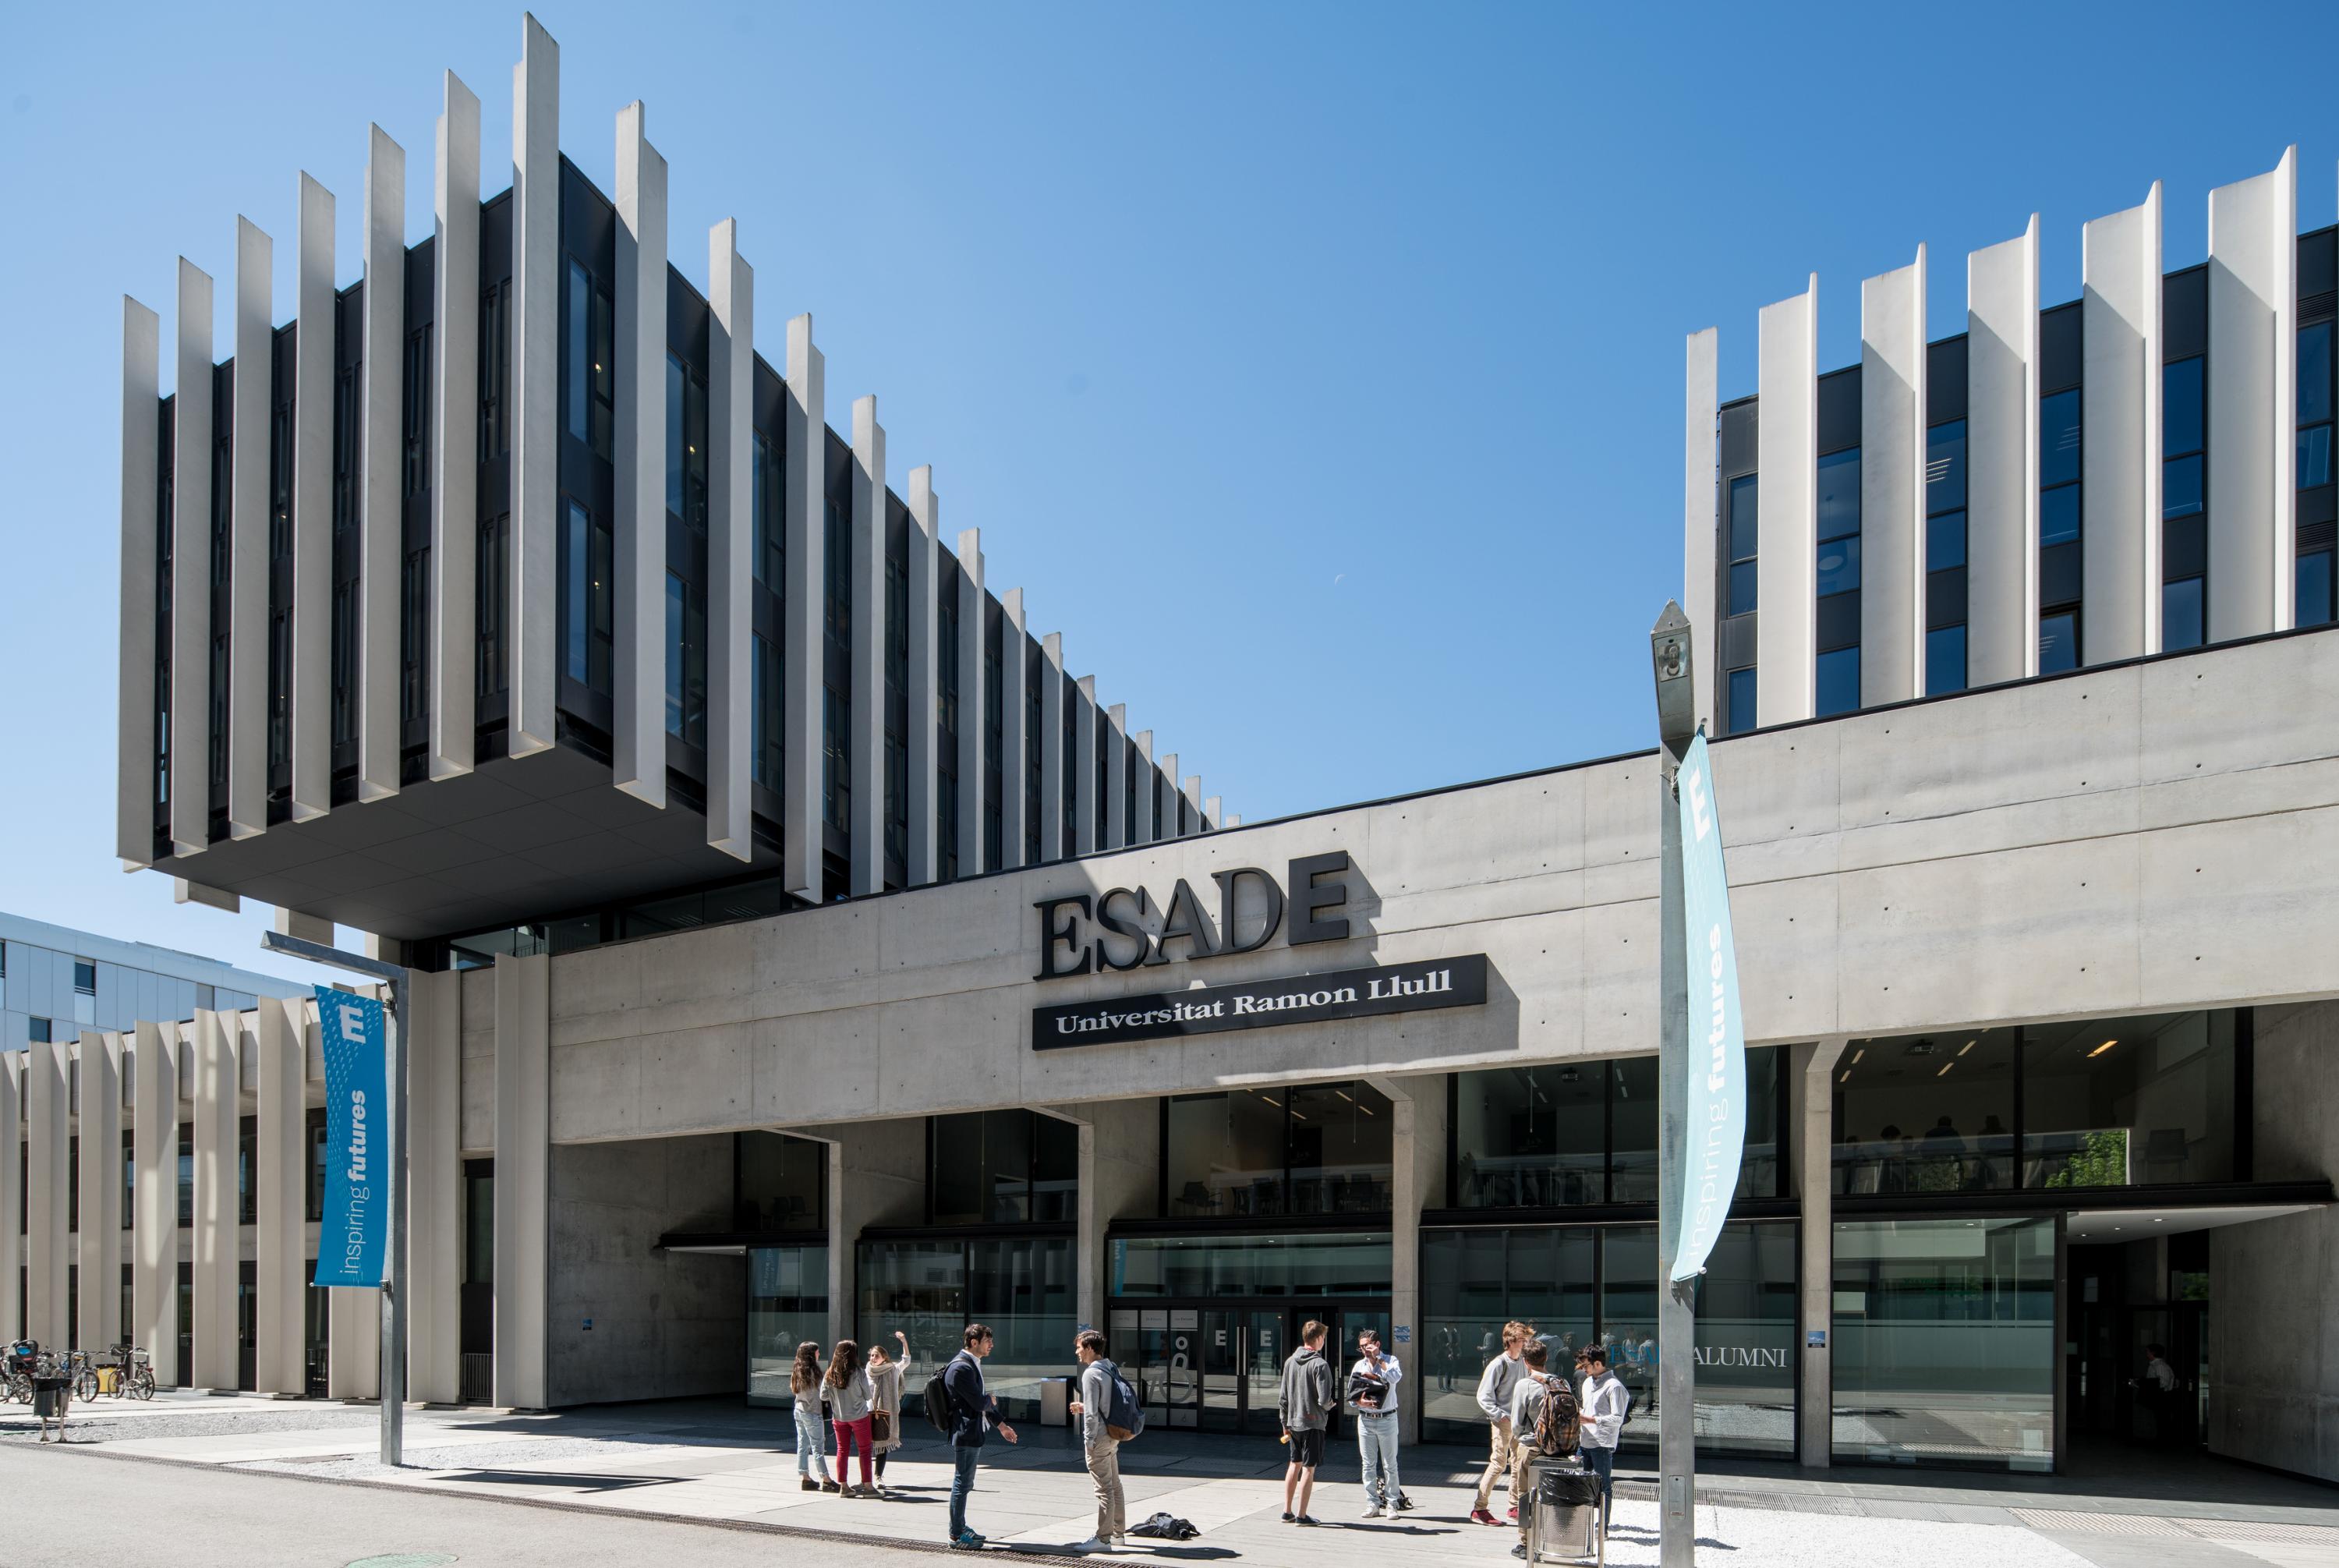 Spain university. Университет Барселоны Universitat de Barcelona:. Институты Барселоны ESADE. Бизнес-школа ESADE. Университет Барселоны (UB).